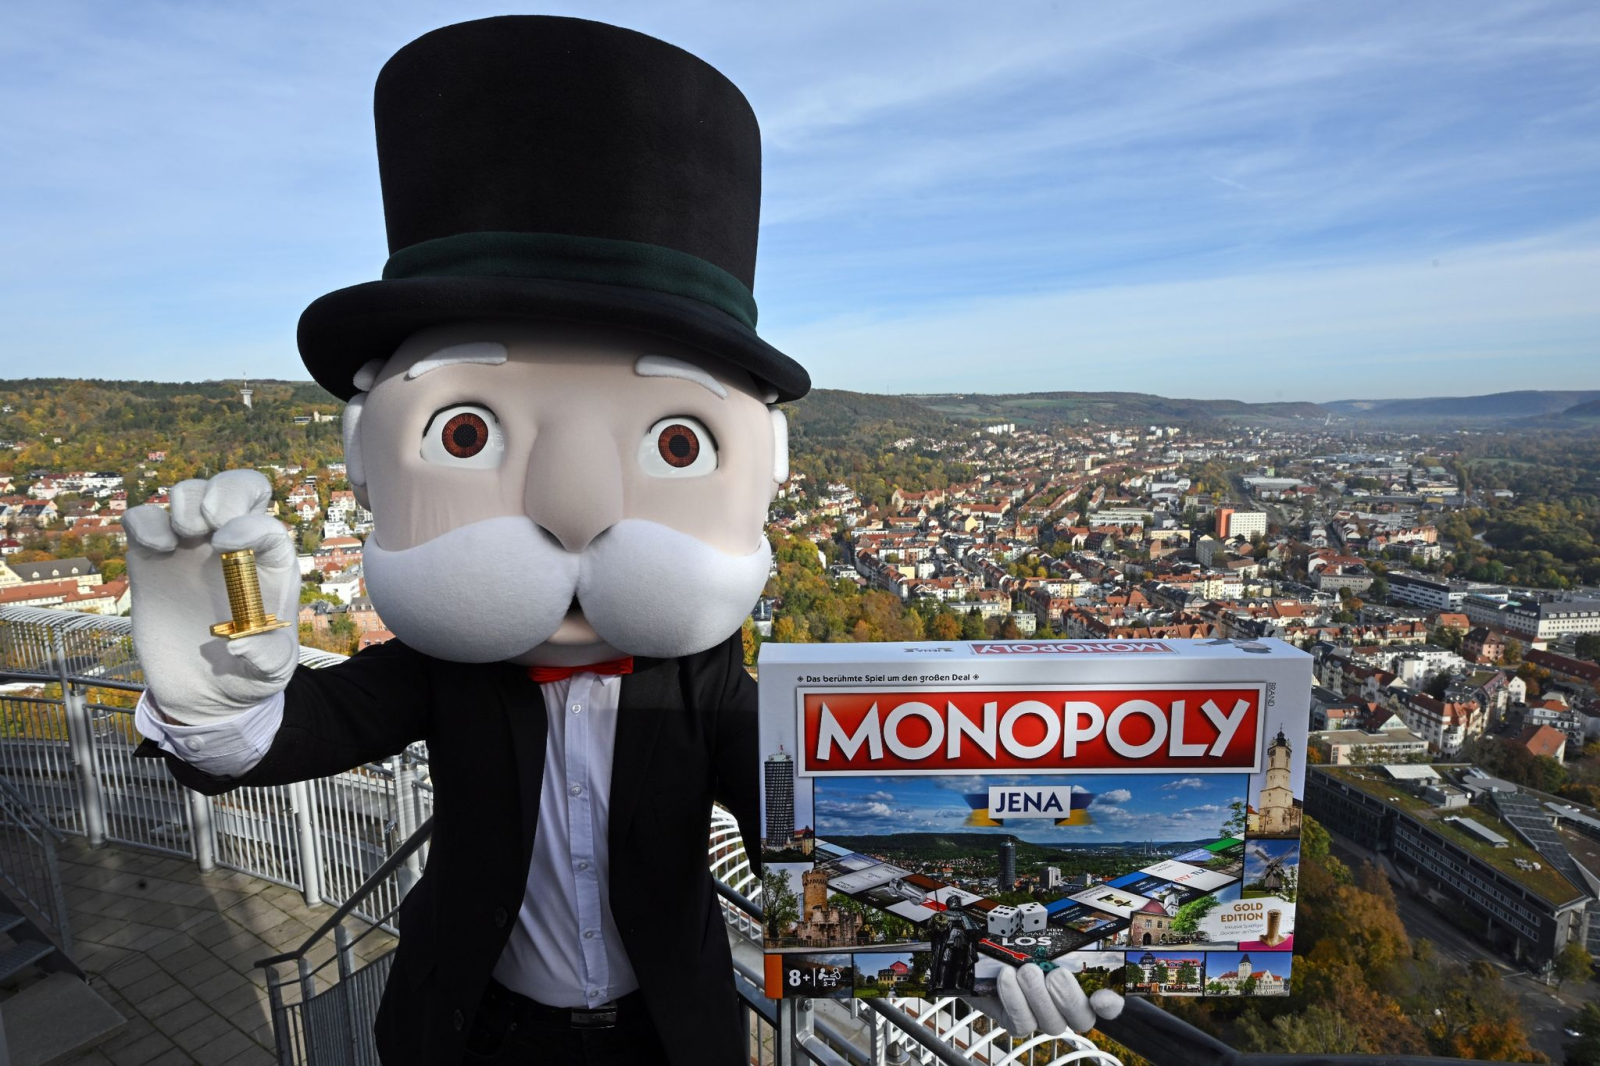 Mr. Monopoly präsentiert auf der Aussichtsplattform des Jentower eine neue Monopoly Edition Jena.